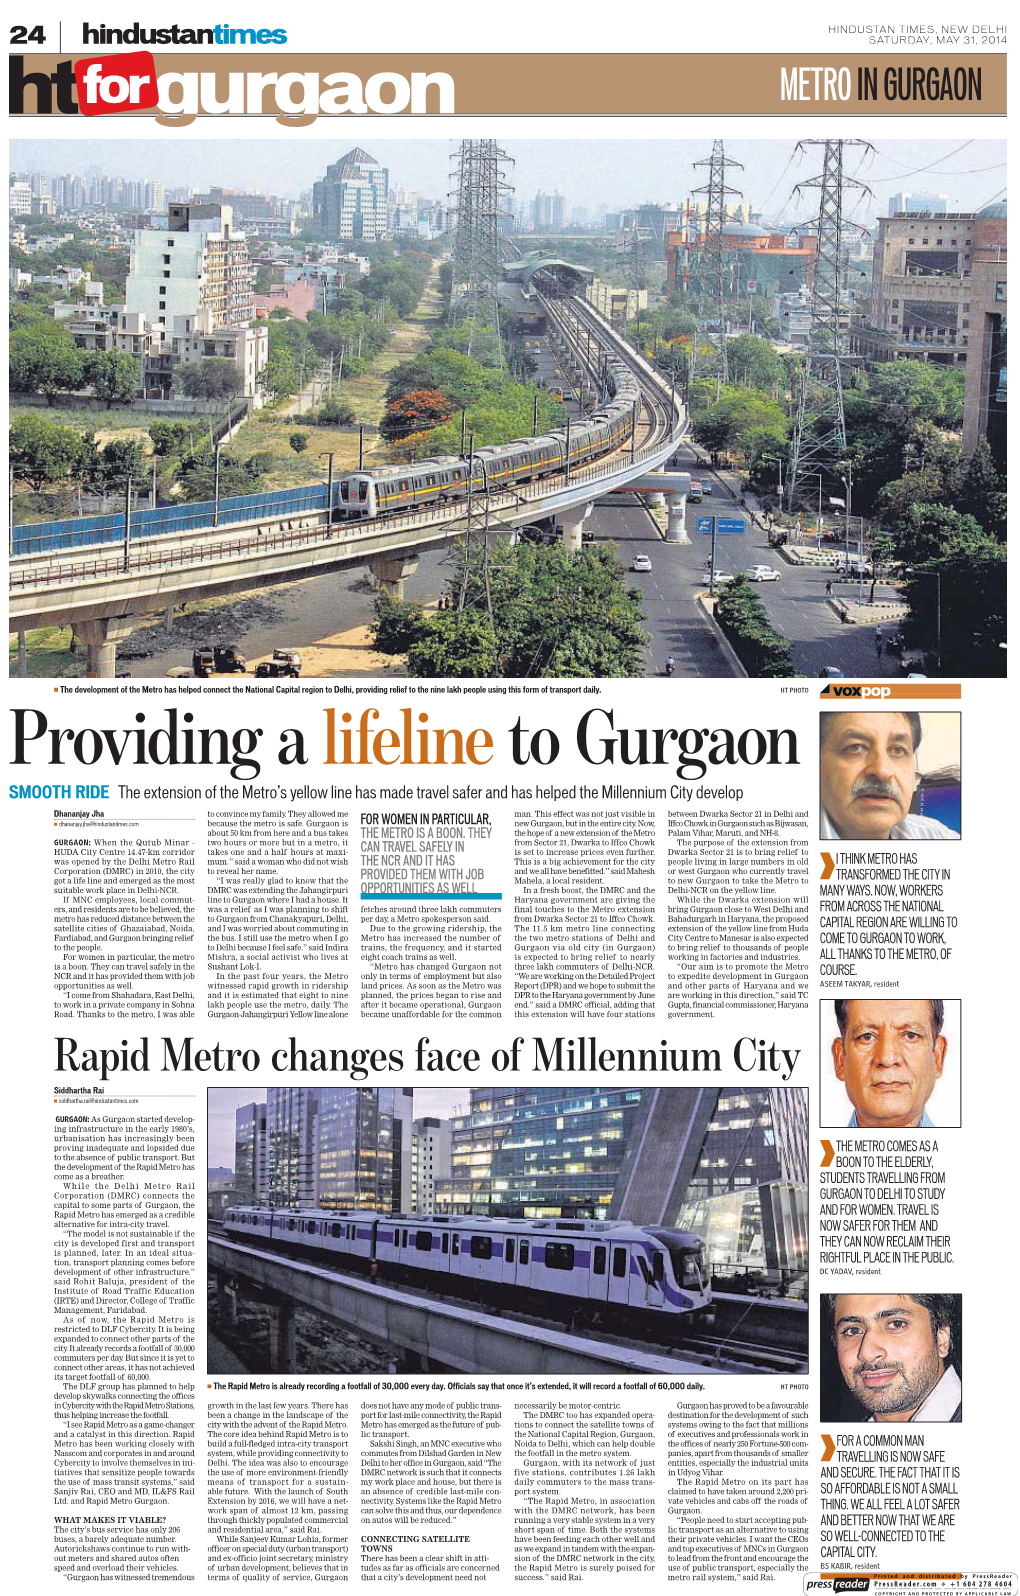 Providing Alifeline to Gurgaon